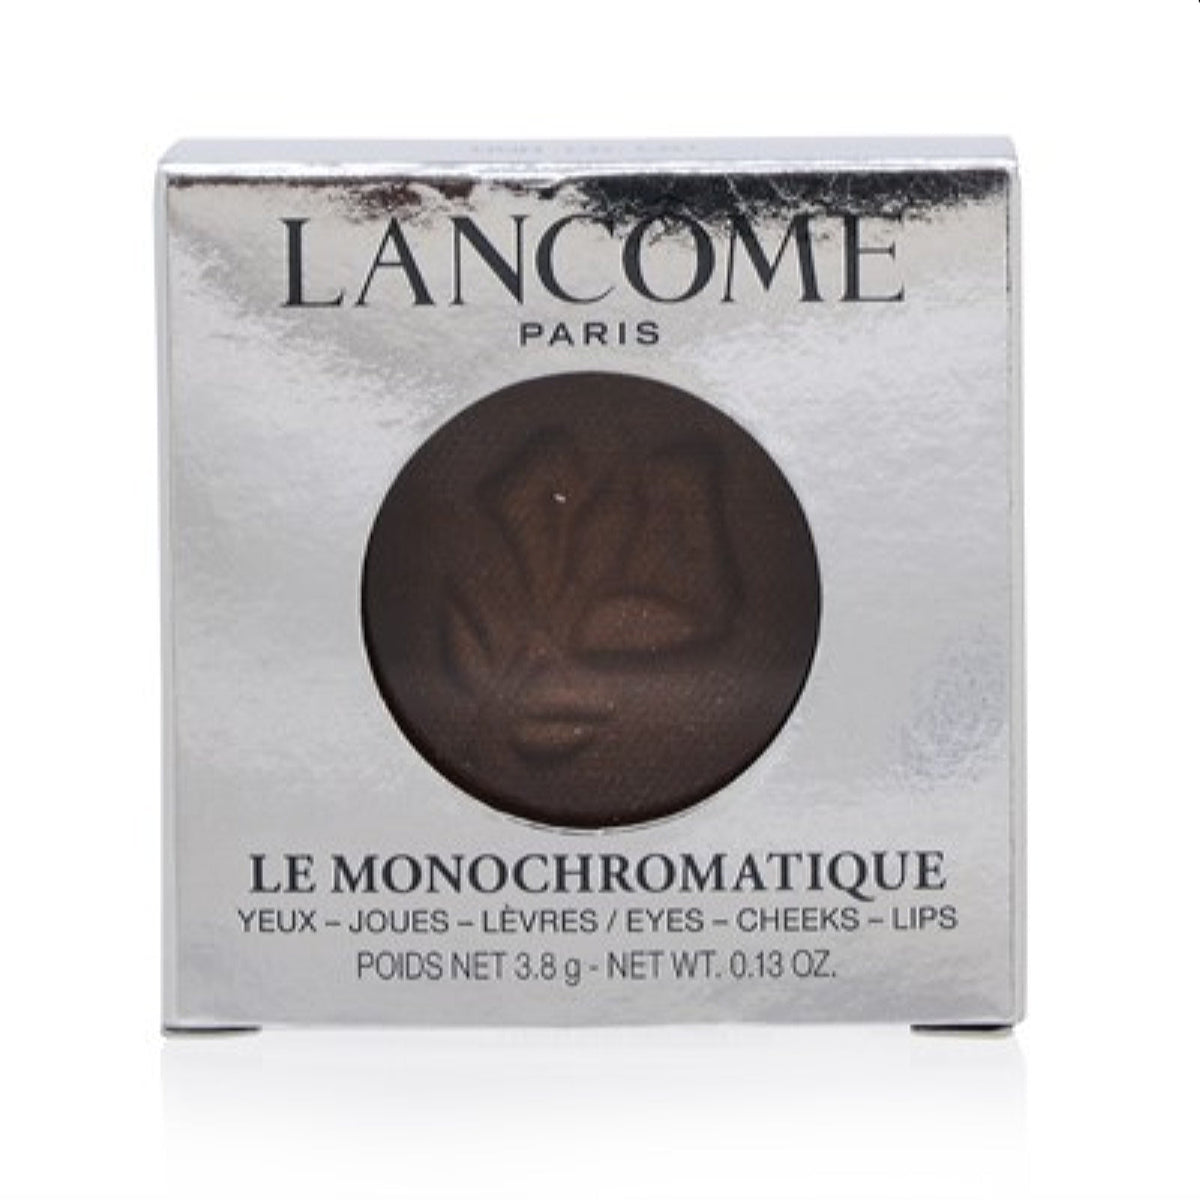 Lancome Le Monochromatique Eye, Cheek, Lip Crm-To-Powder Tint (Ooh La La!).13 Oz S2956400